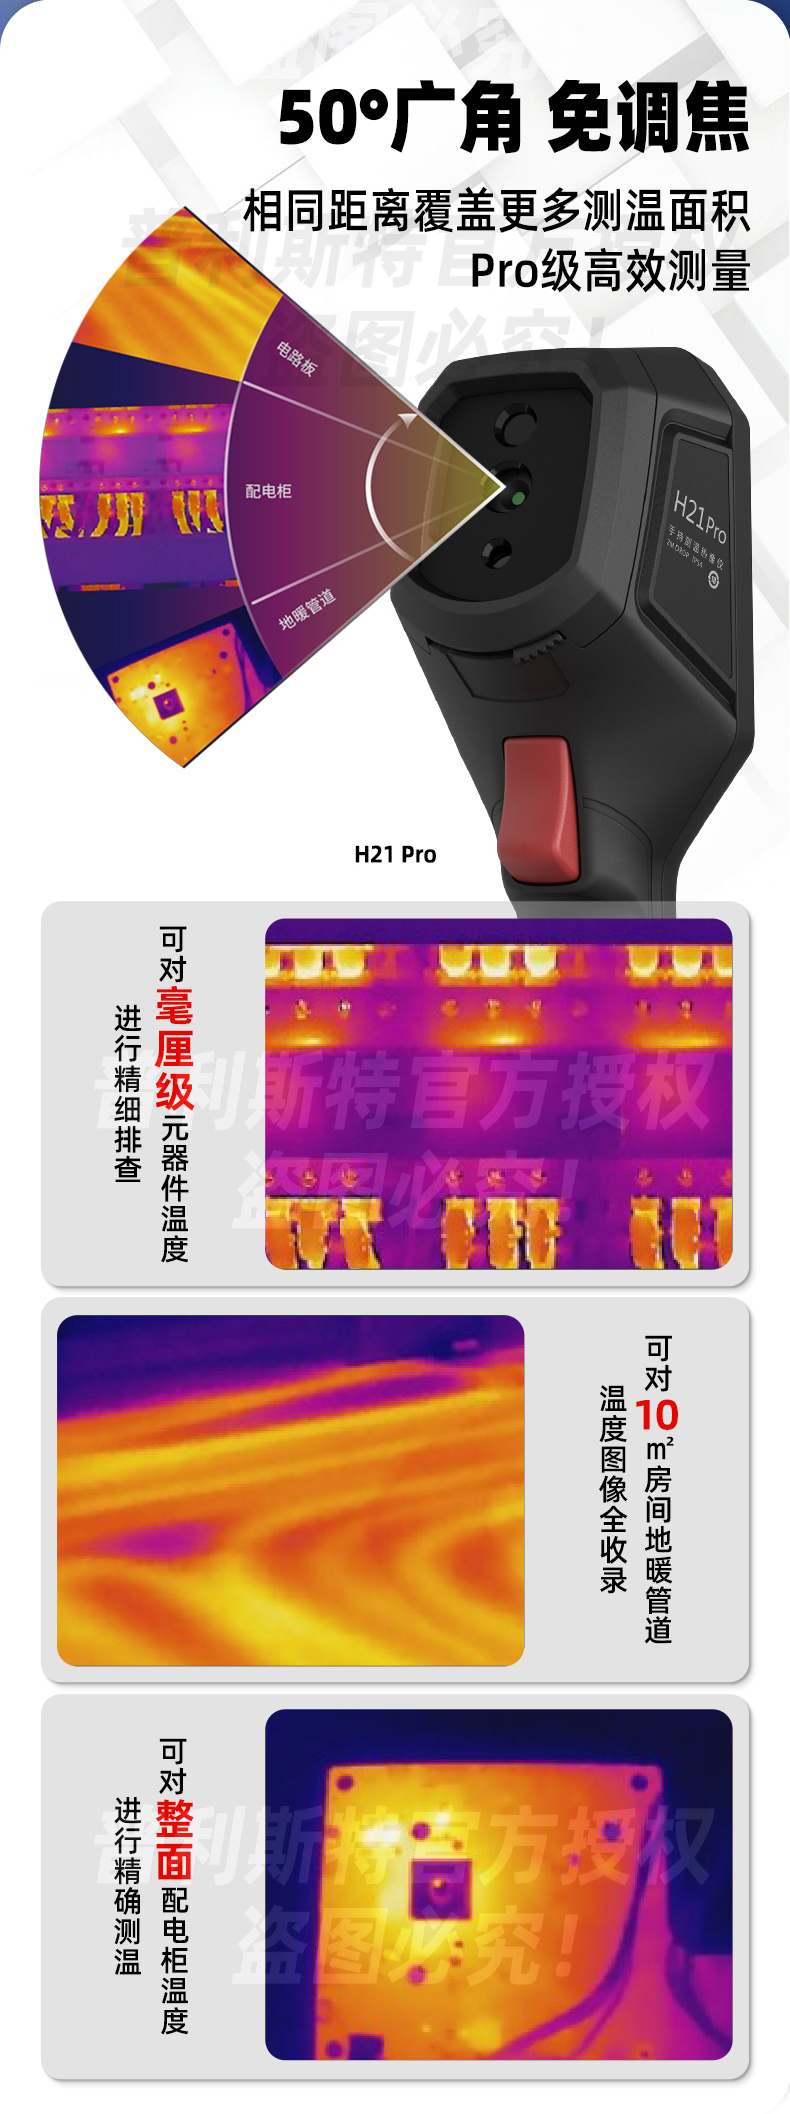 海康H21 Pro红外热像仪(图6)